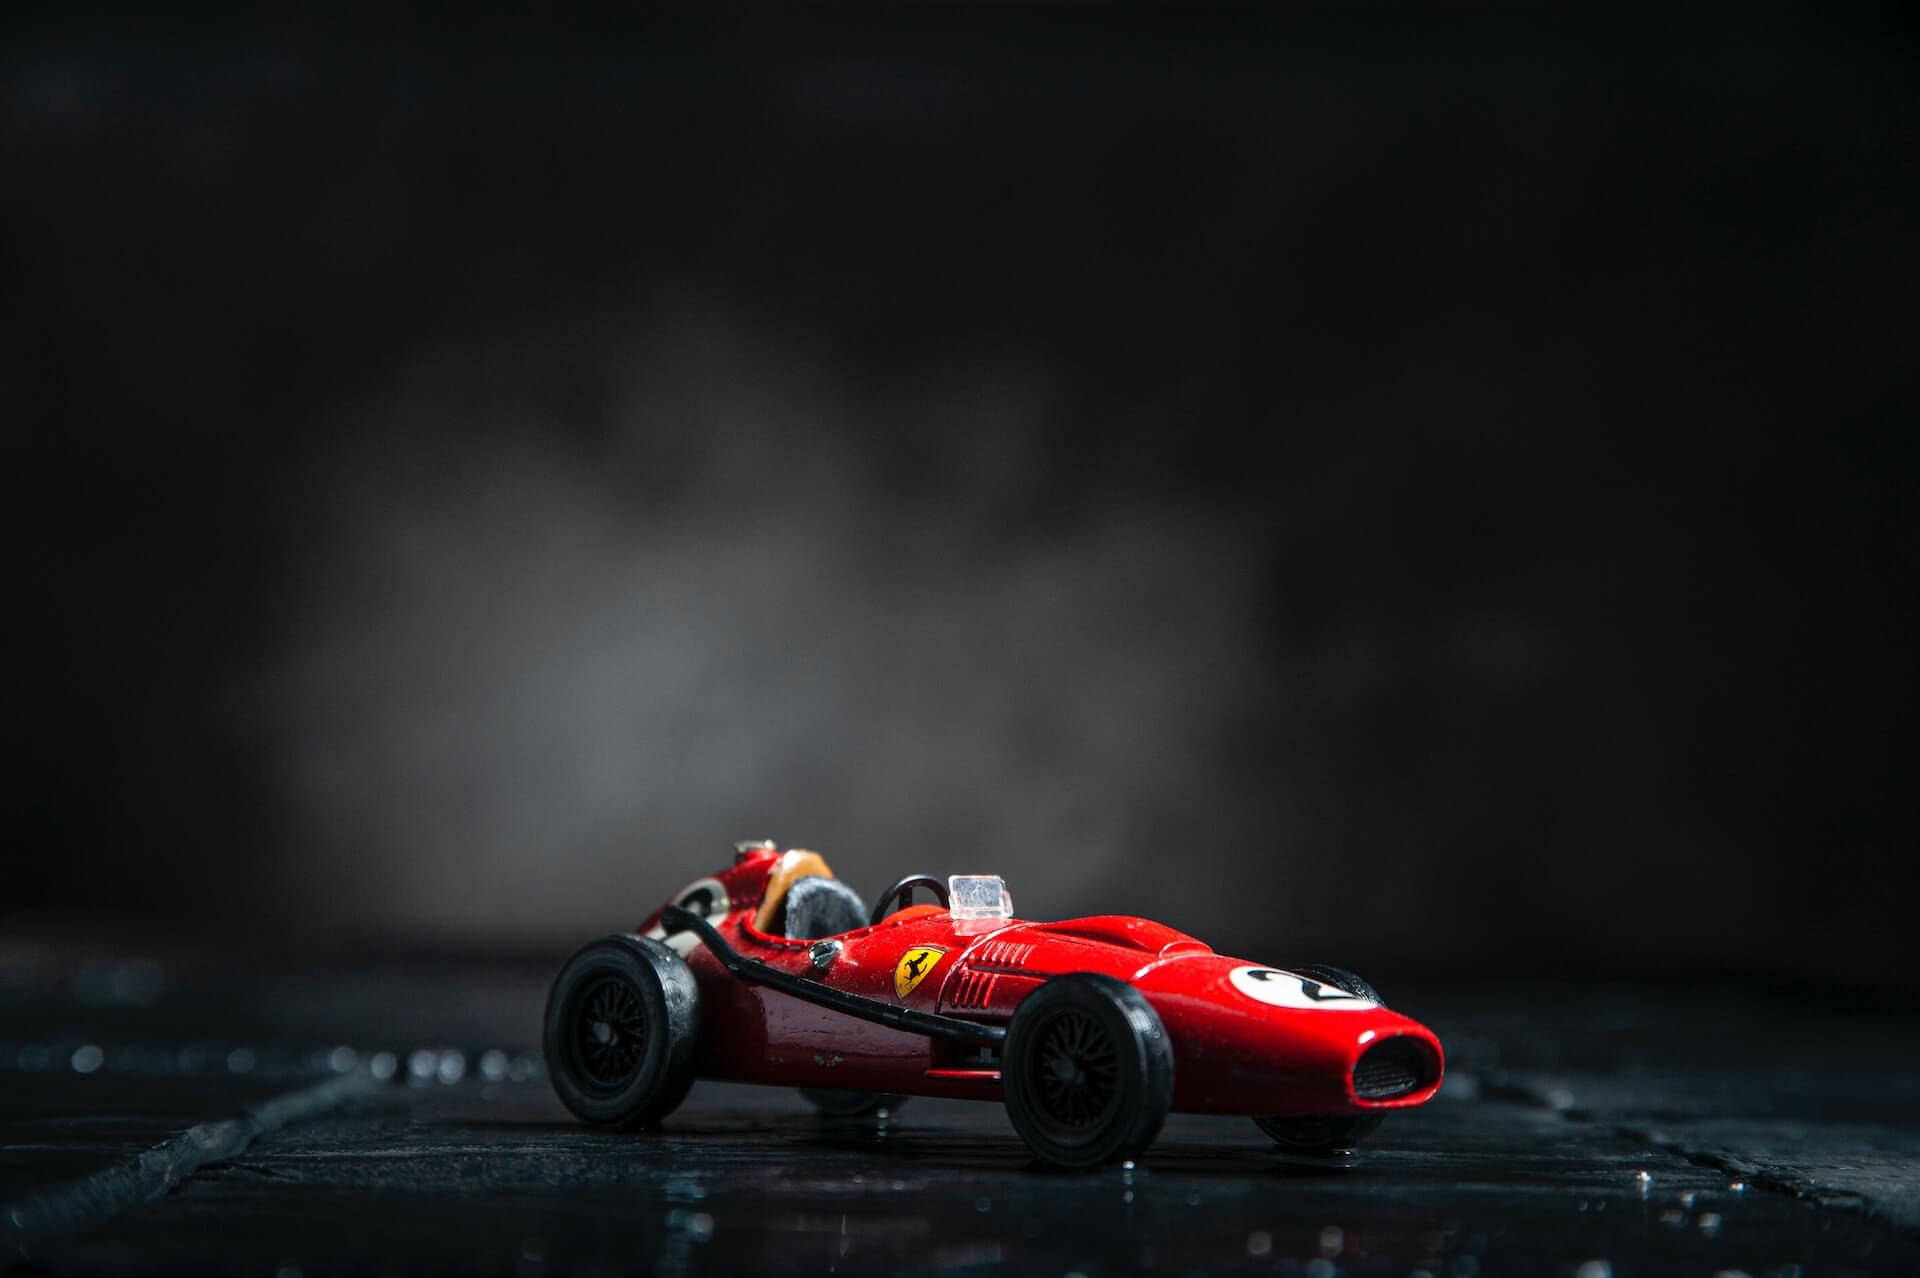 Red vintage model race car against black background